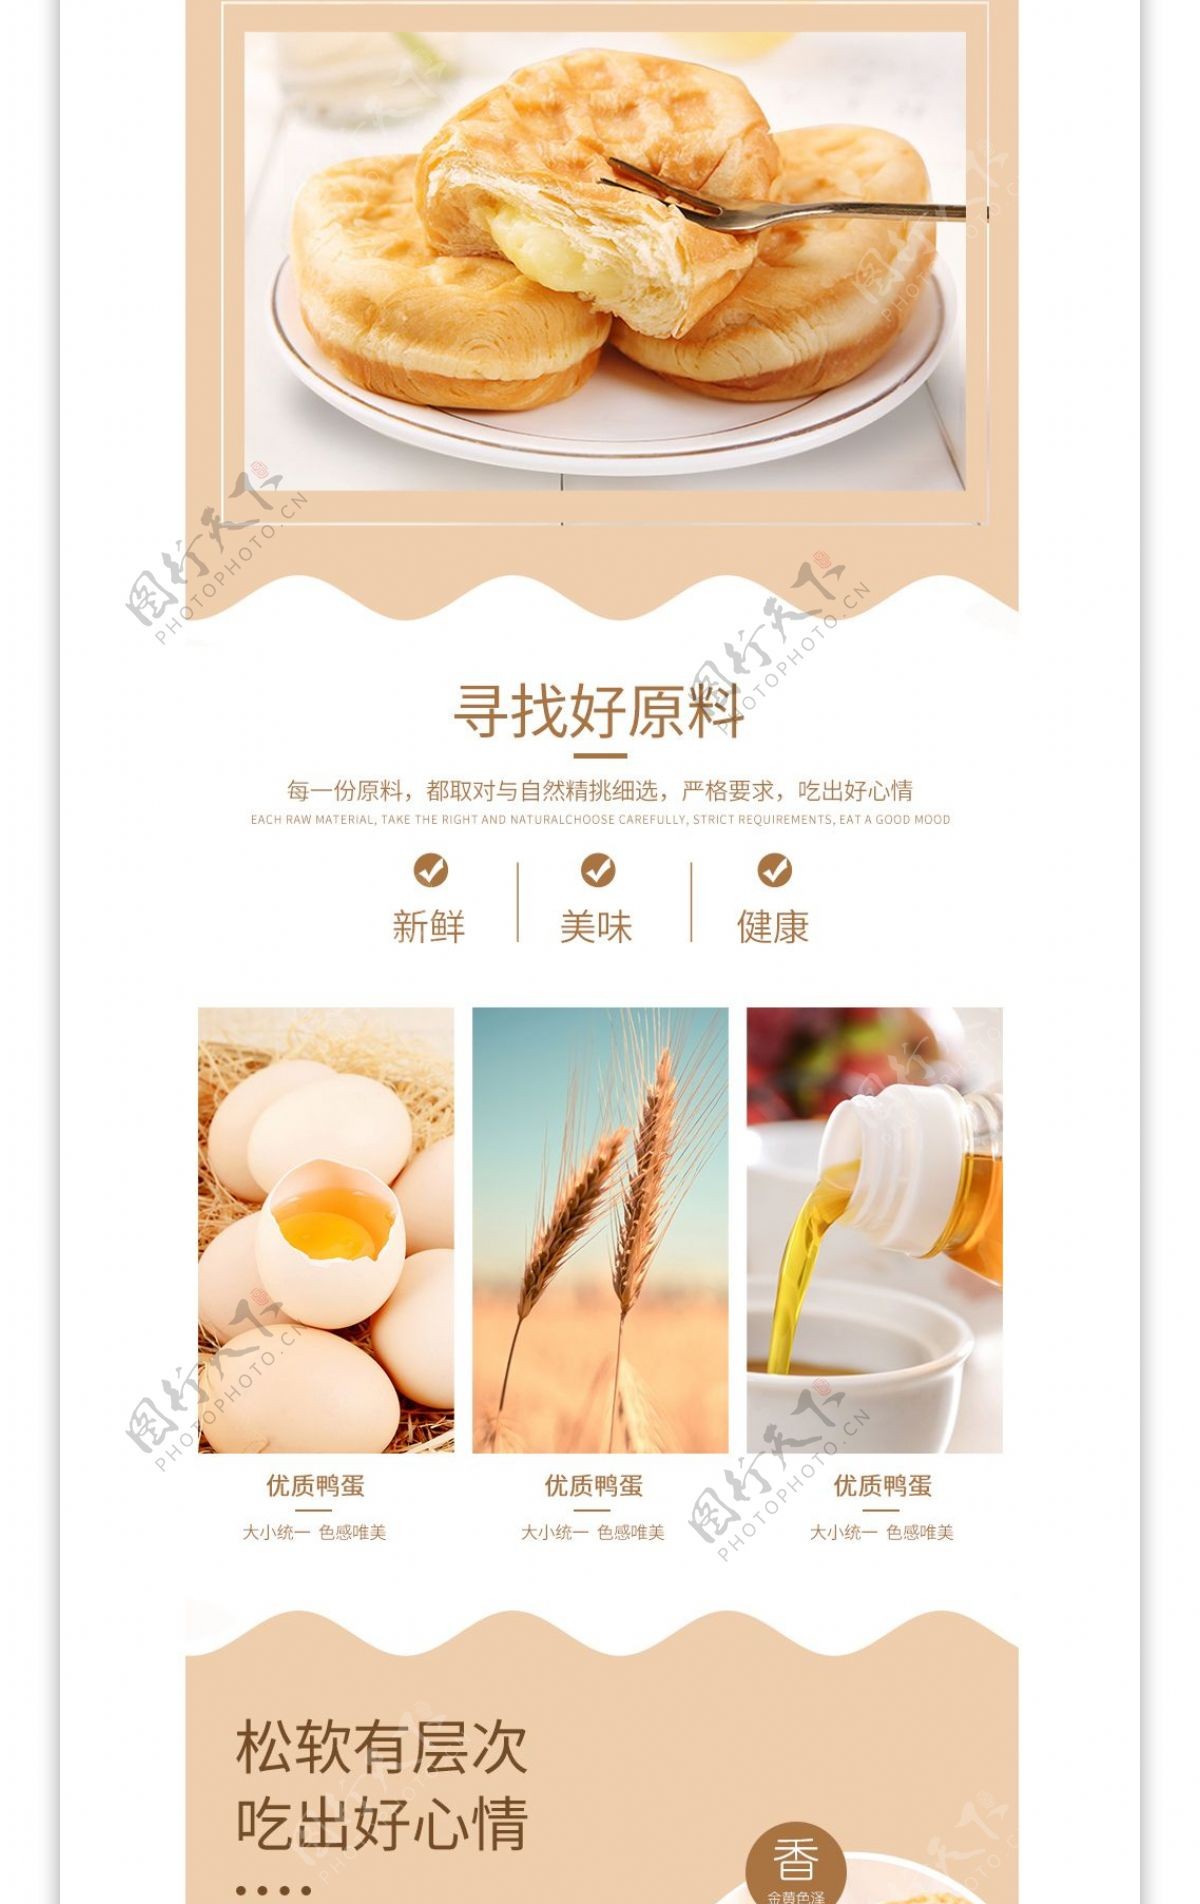 天猫米白色食品茶饮面包早餐面包详情页模板